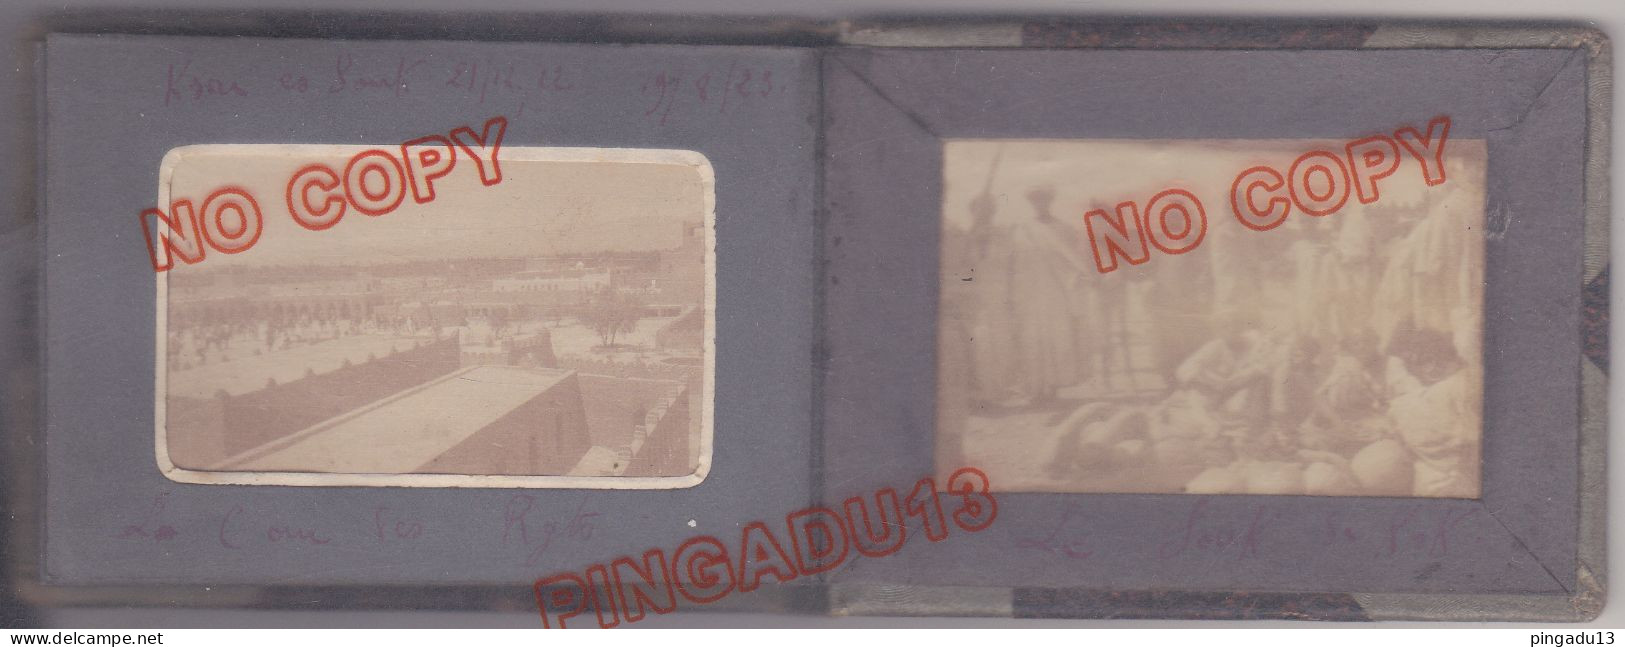 Fixe Maroc Meknès année 1922 imitaria Petit album très bon étatToutes les photos de cet album de poche ont été scannées